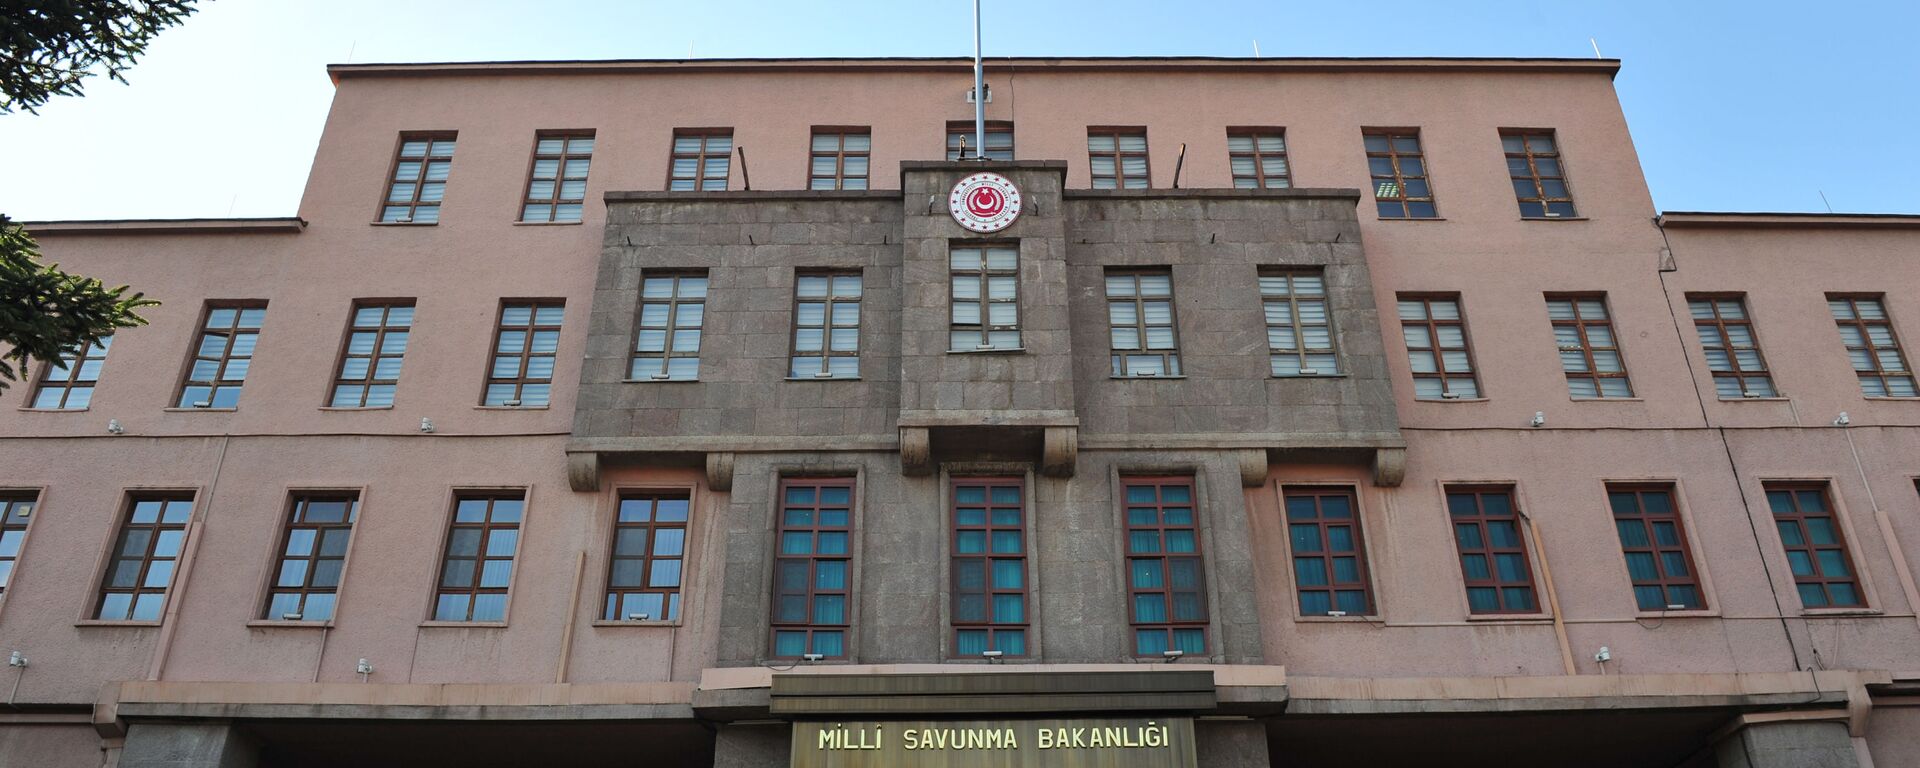 Milli Savunma Bakanlığı (MSB) - Sputnik Türkiye, 1920, 12.02.2021